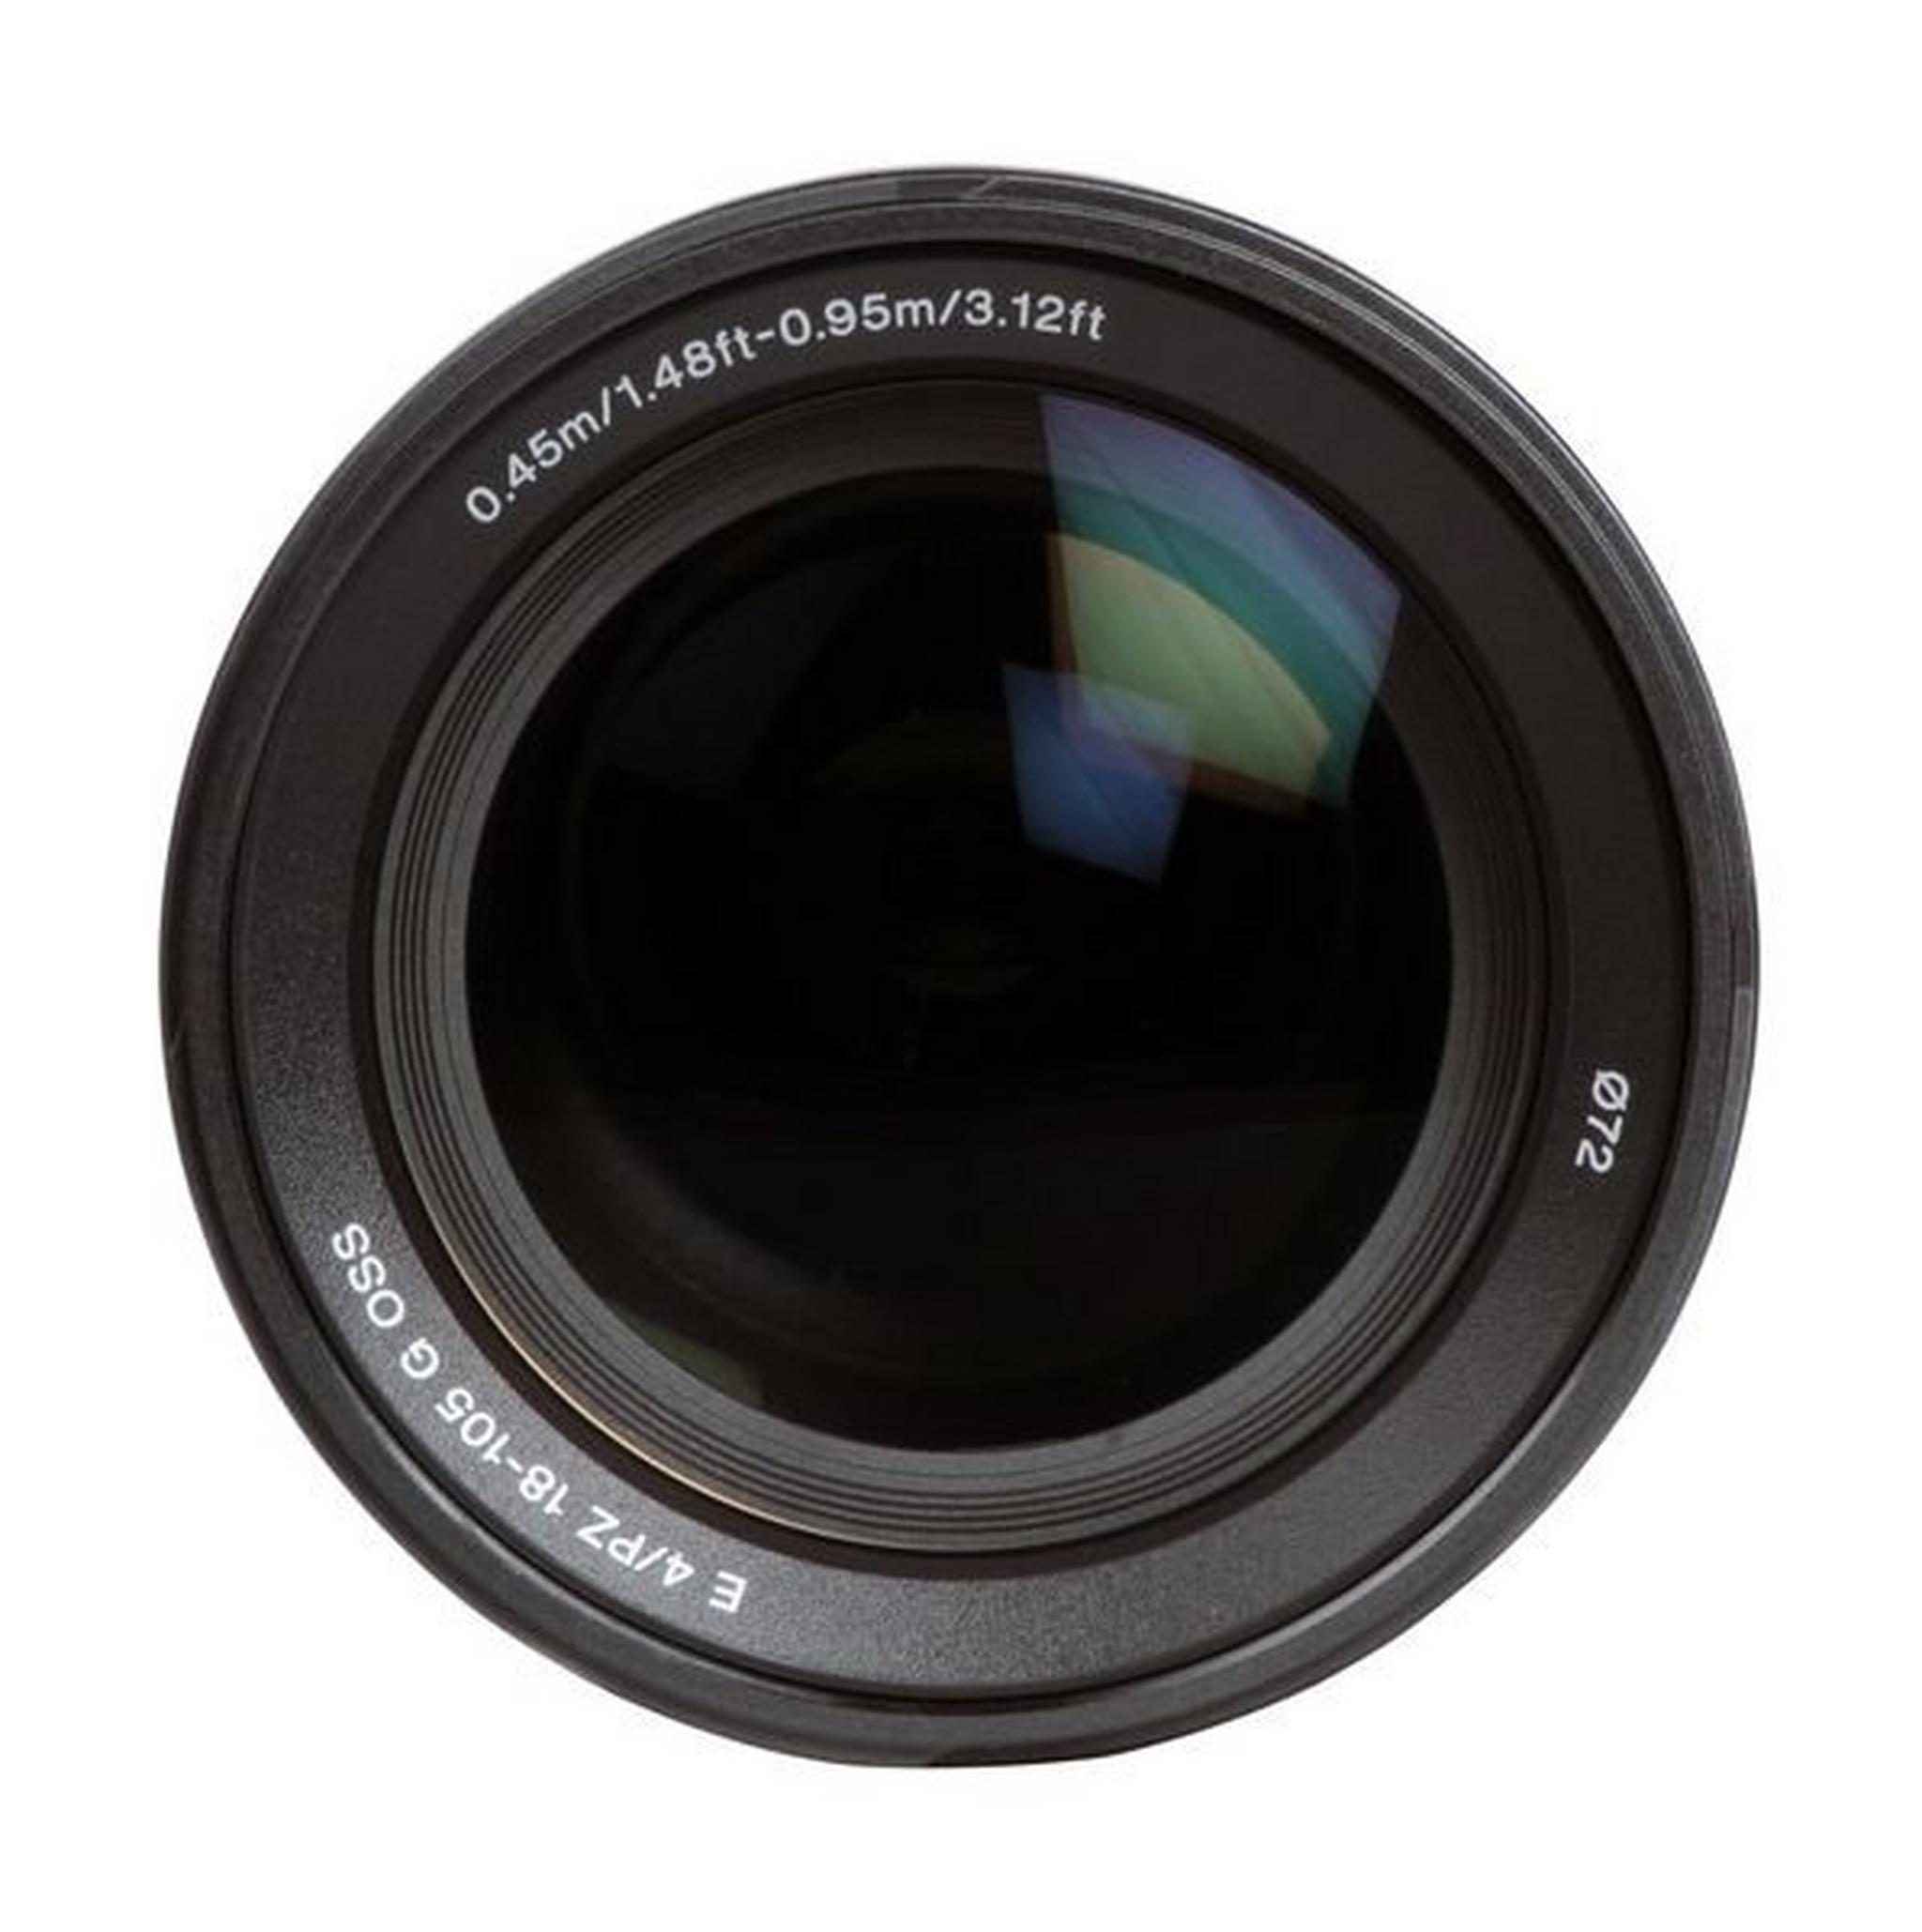 Sony 18-105mm f/4 Autofocus OSS Lens (SELP18105G) - Black